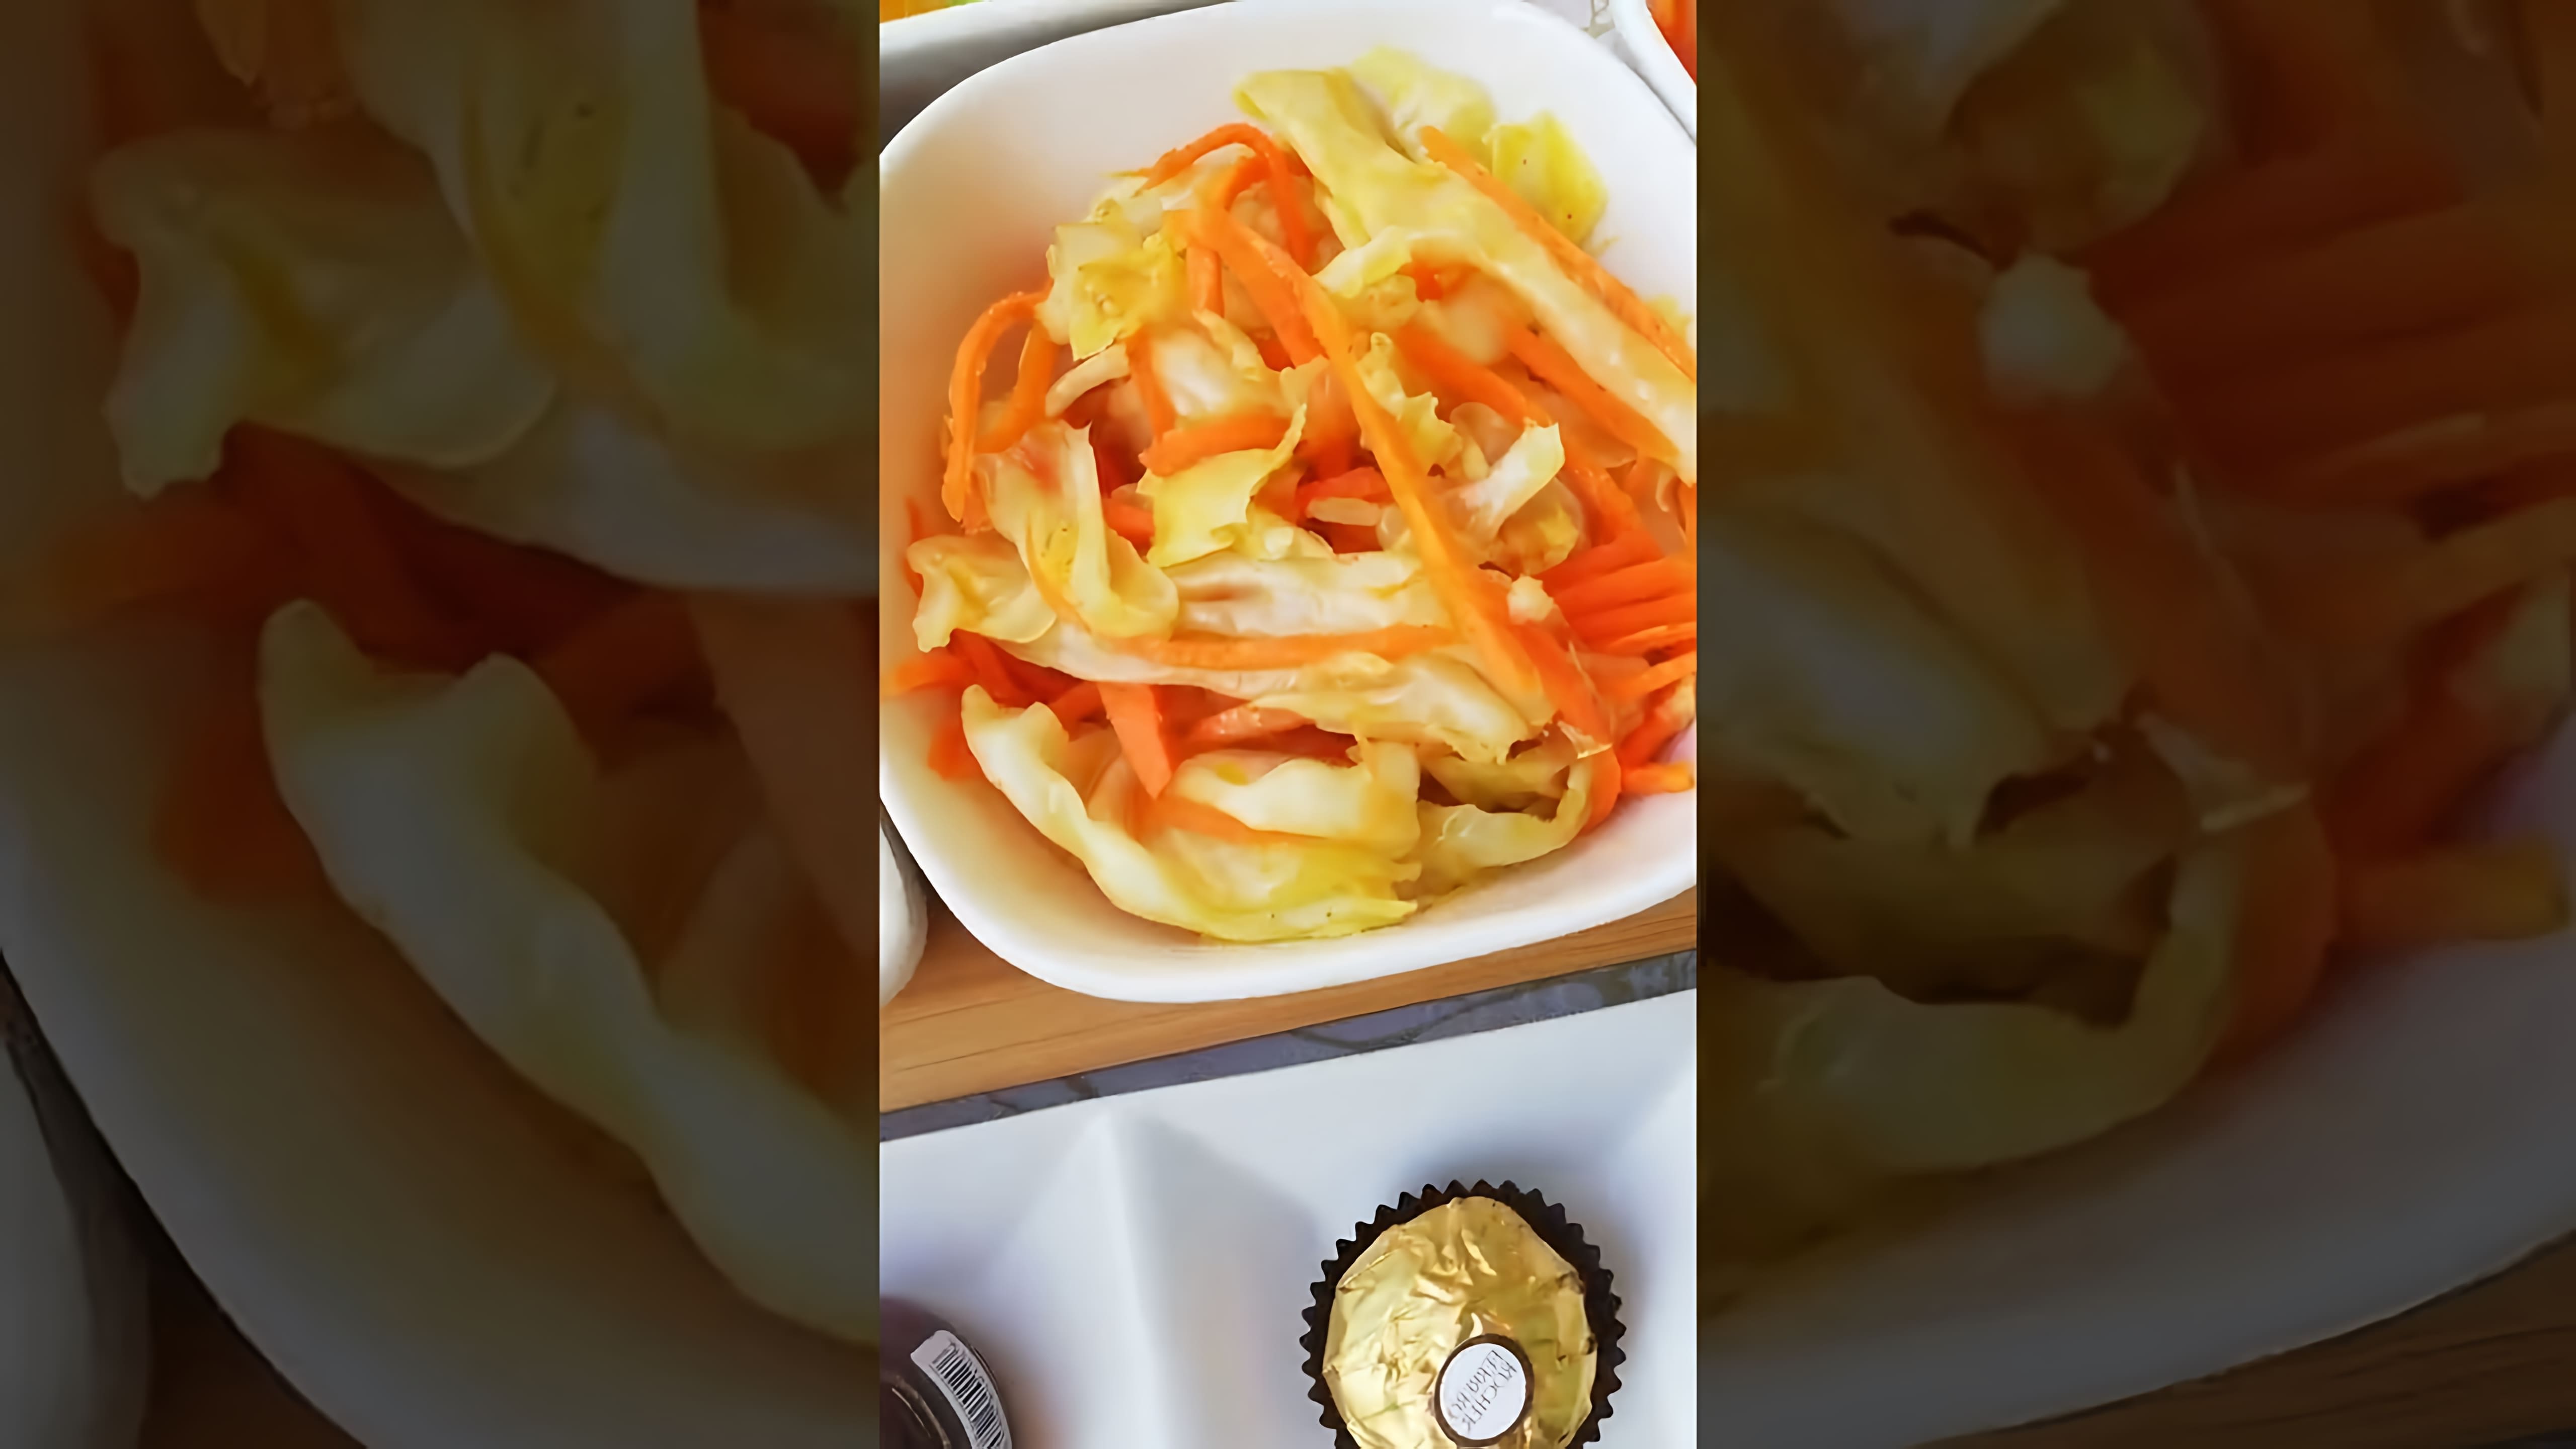 В этом видео девушка по имени Любовь Ким готовит корейский салат из капусты и моркови